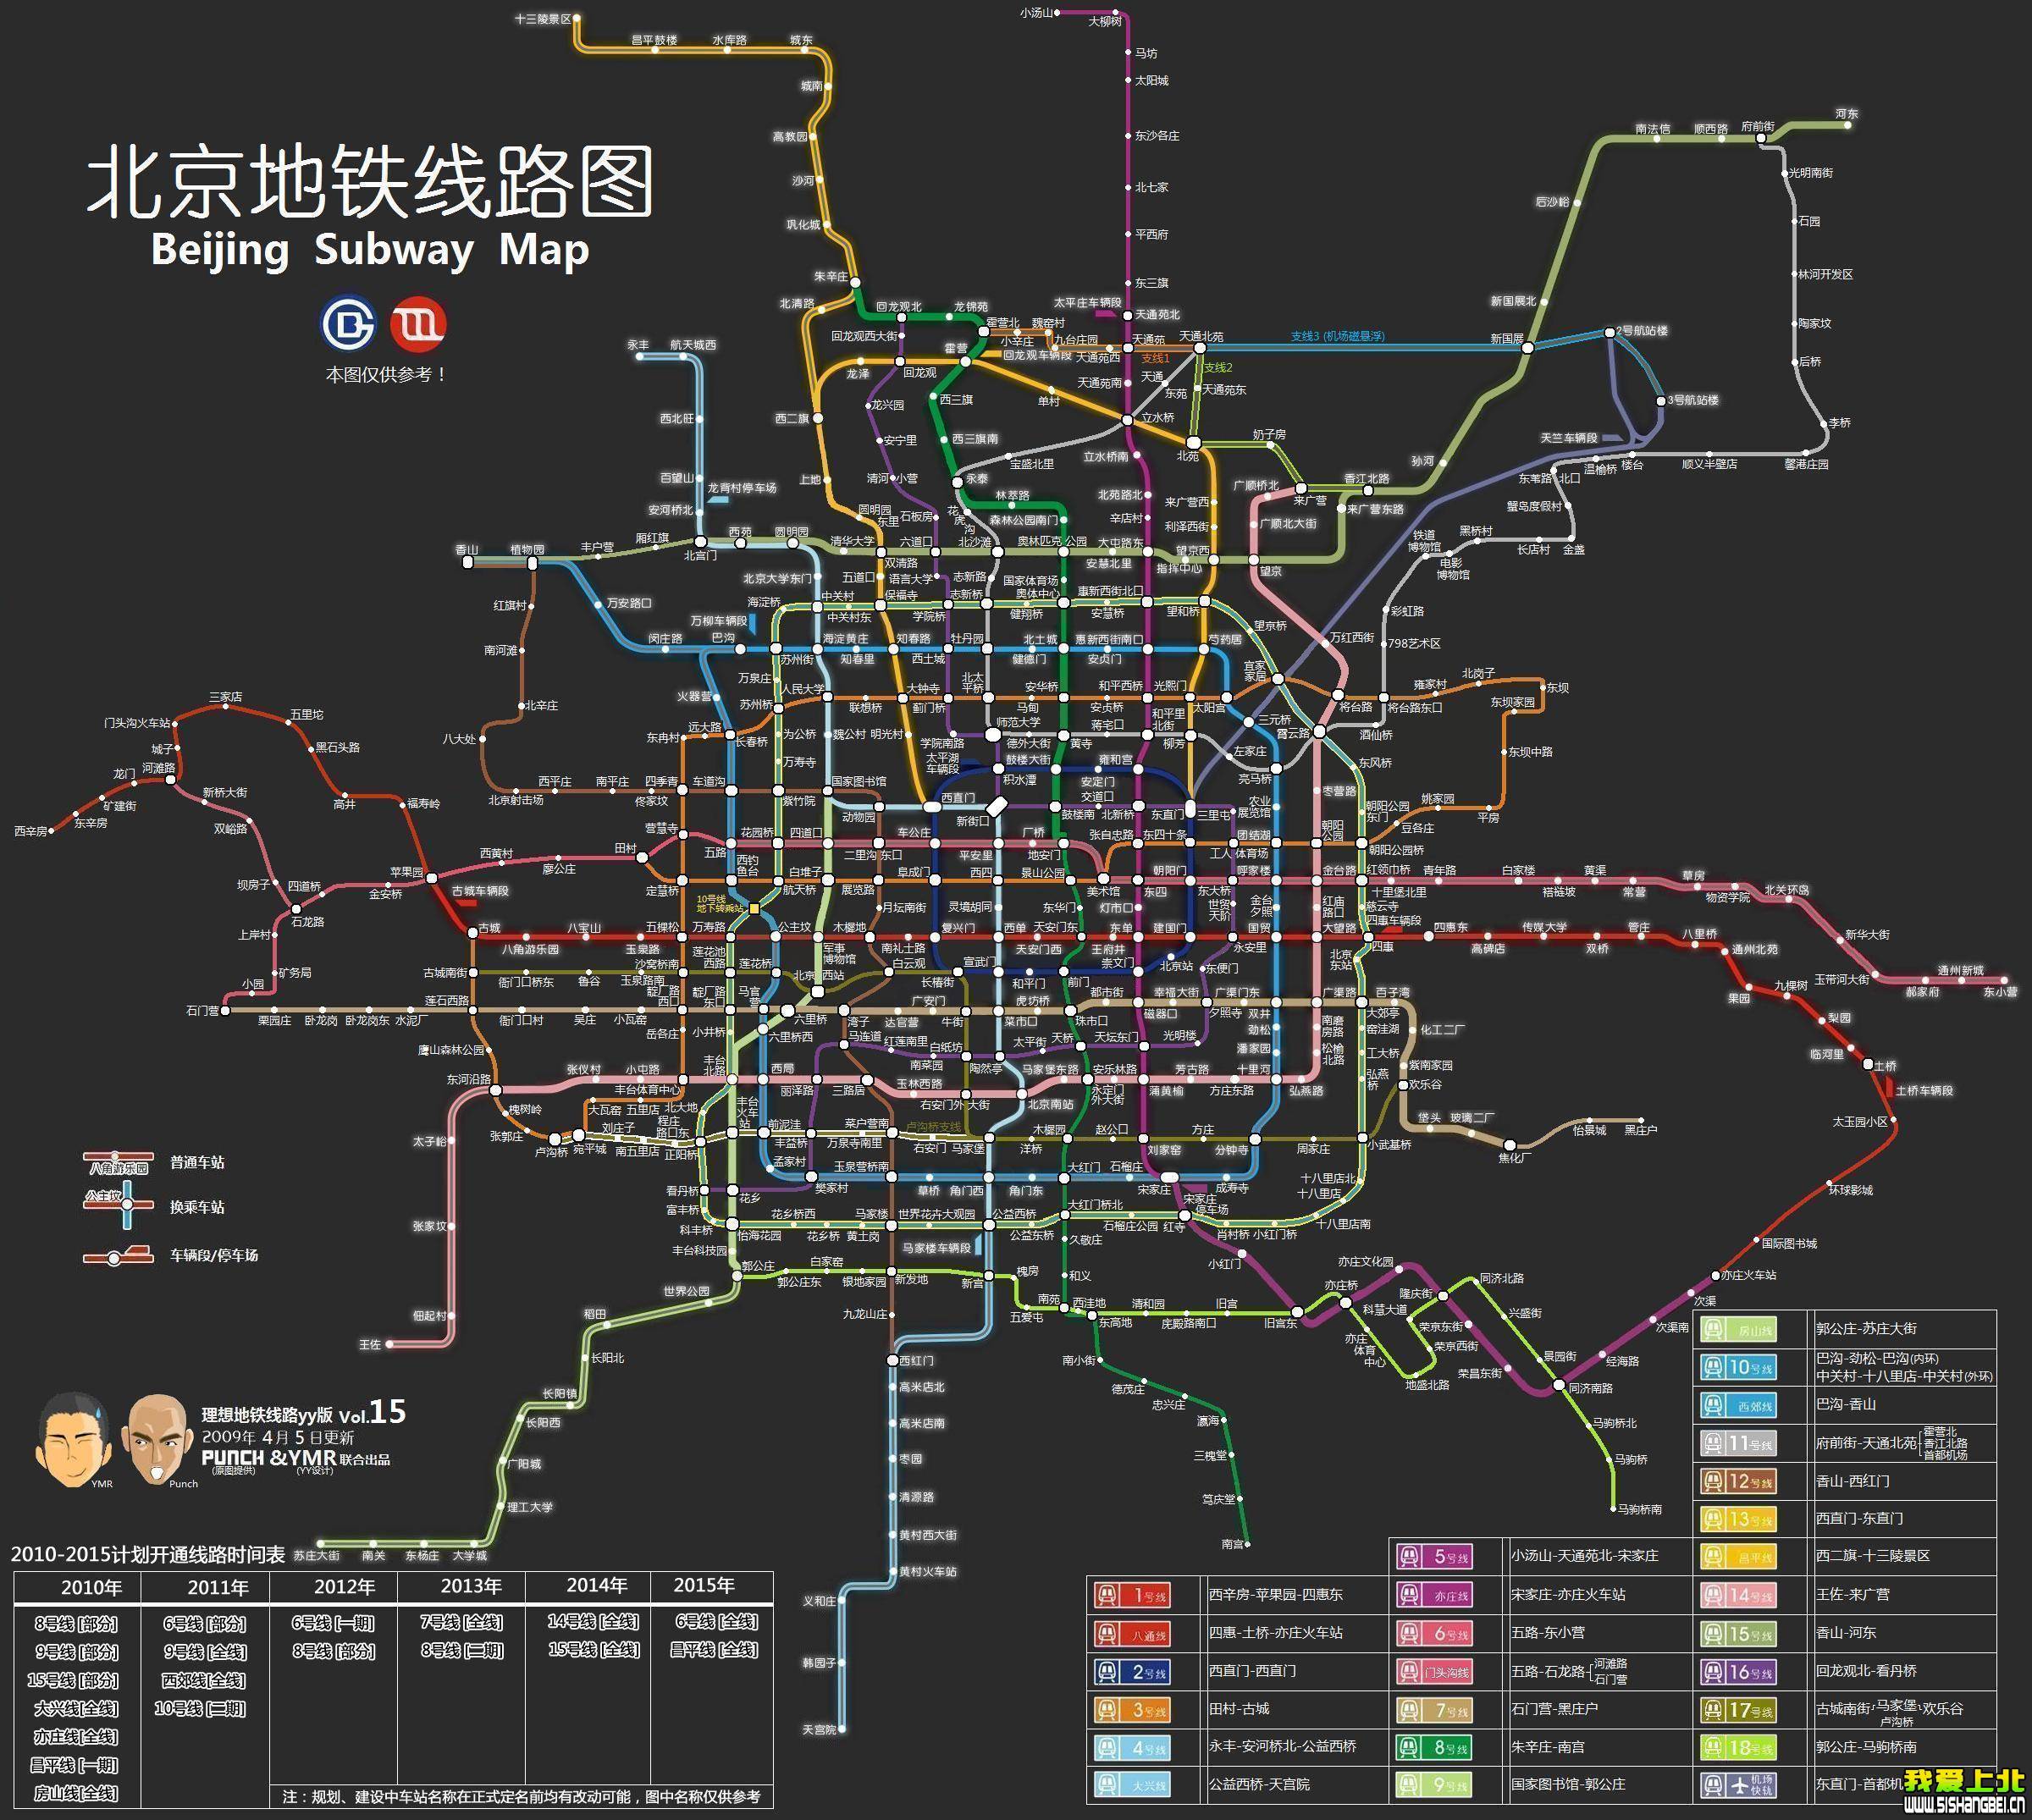 地铁线路规划图;; 地铁规划图; 未来北京的地铁规划图,太雷人了!